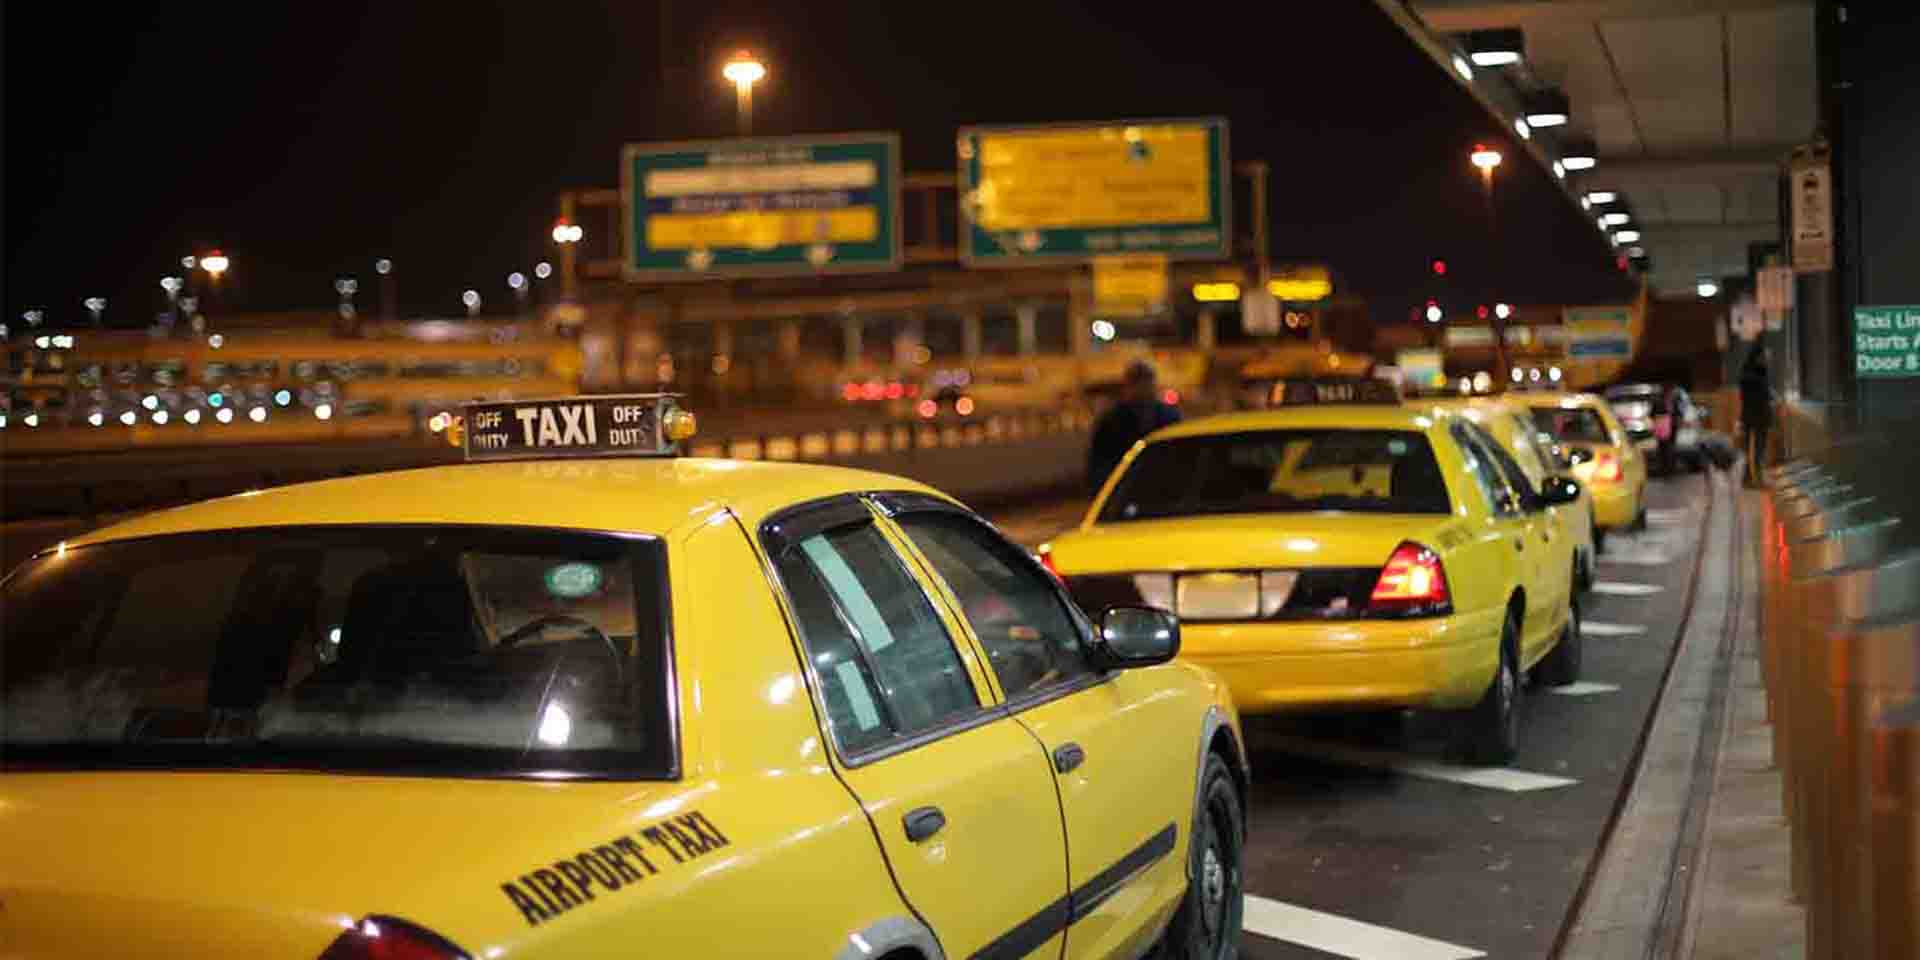 Негритянка такси. Таксисты в аэропорту. Аэропортовое такси. Трансфер такси. Ночной такси.